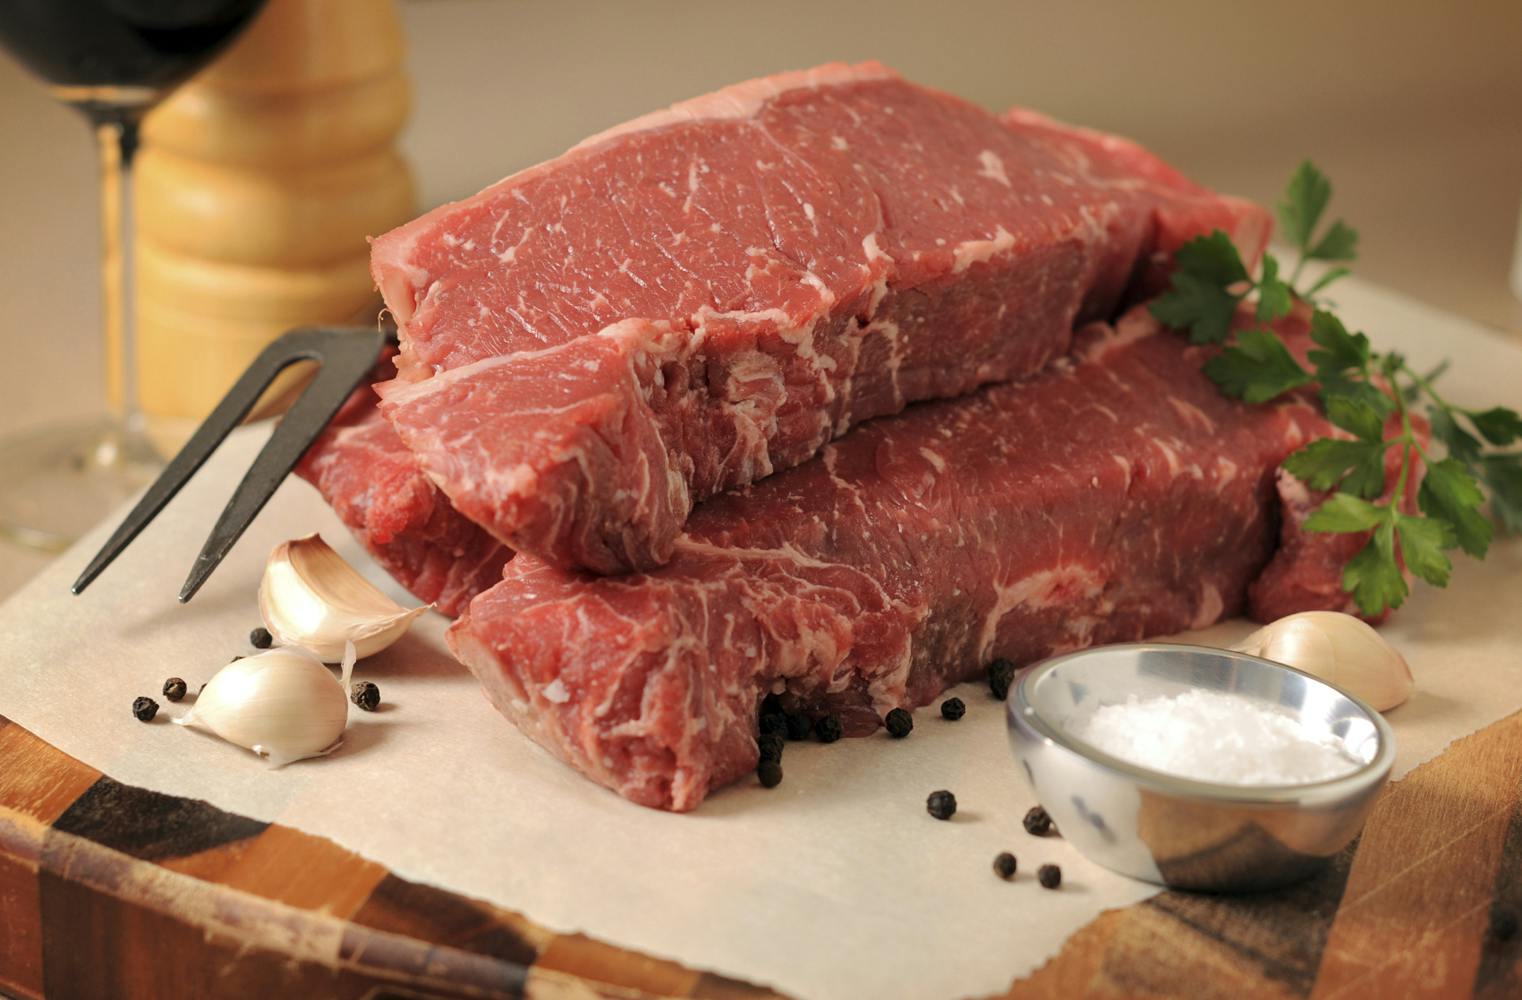 Grillkochkurs | das perfekte Steak | Fleisch richtig grillen